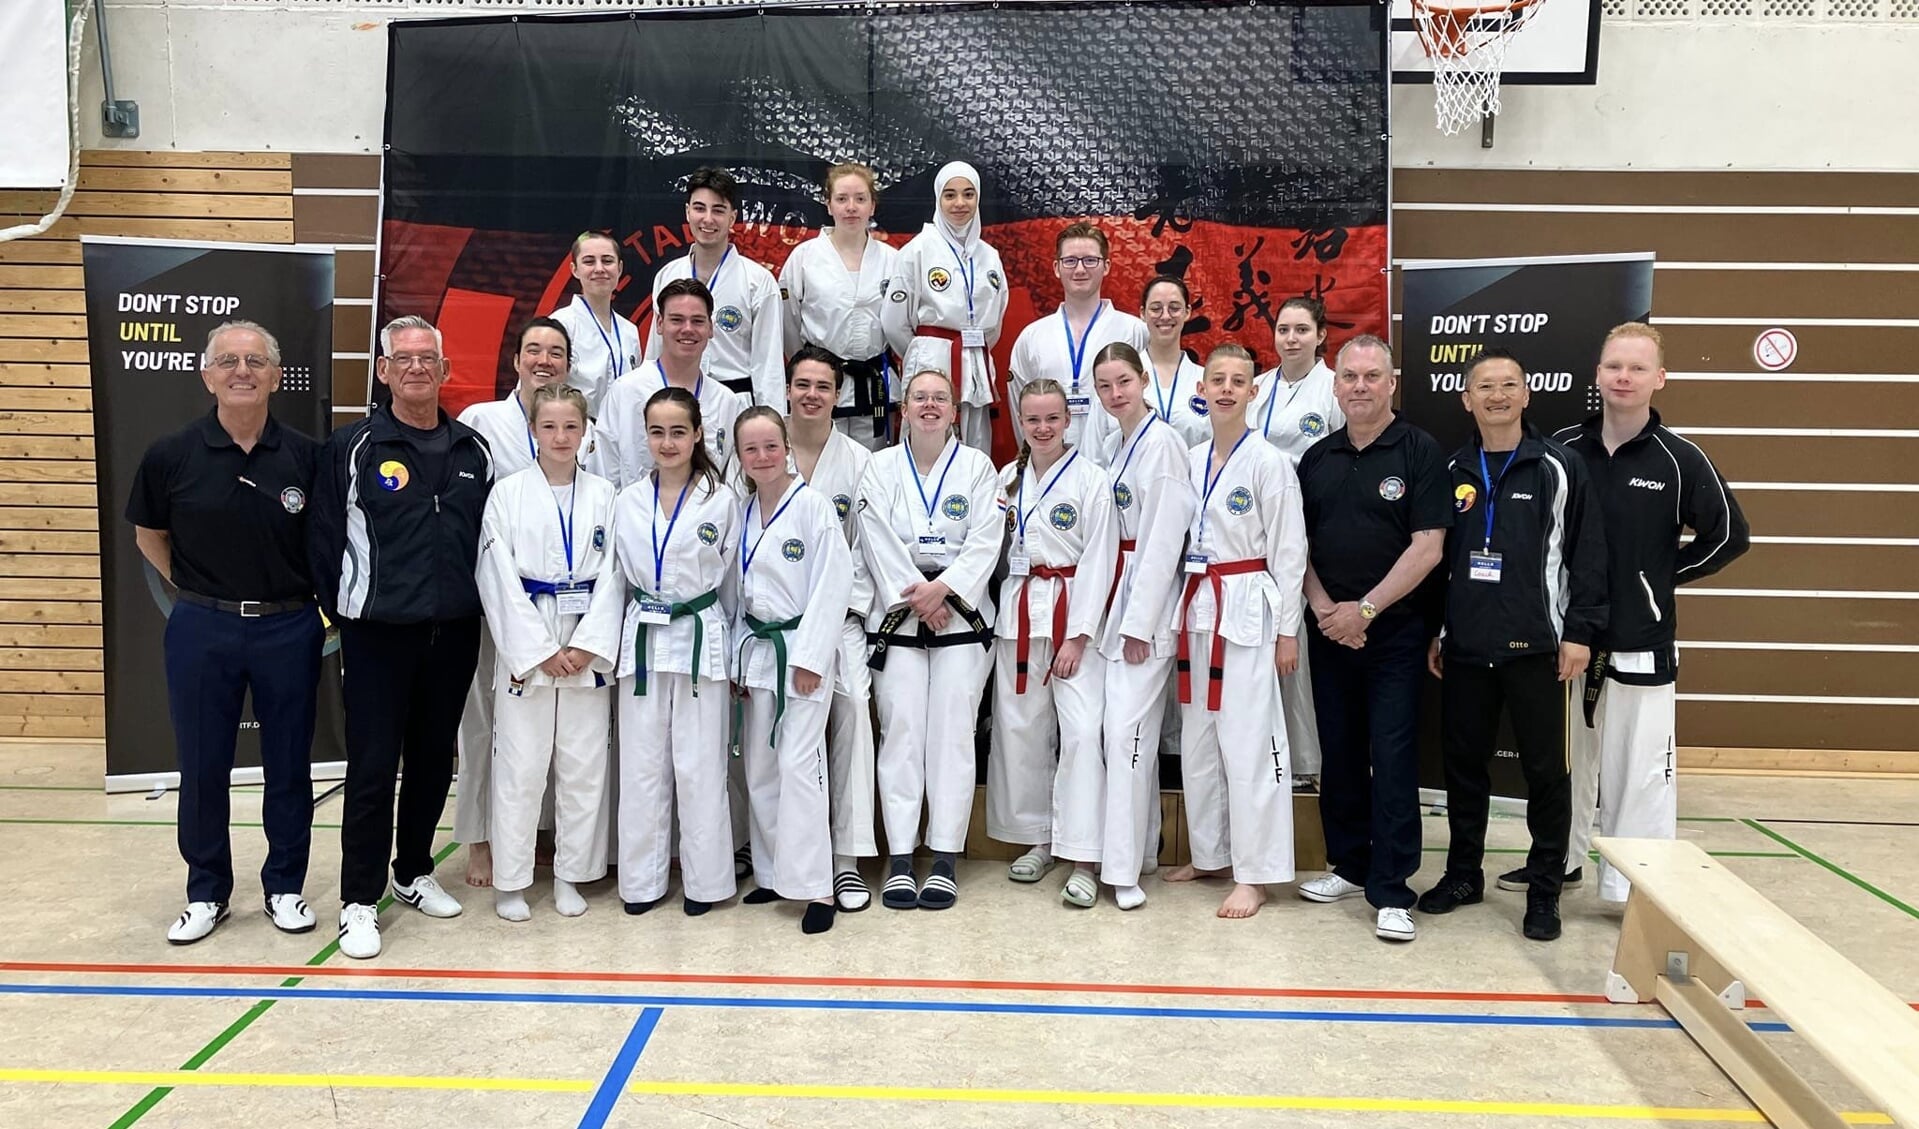 Deelnemers aan de Open Duitse kampioenschappen onder wie de delegatie van taekwondoschool Soo Bak-Gi uit Asten.